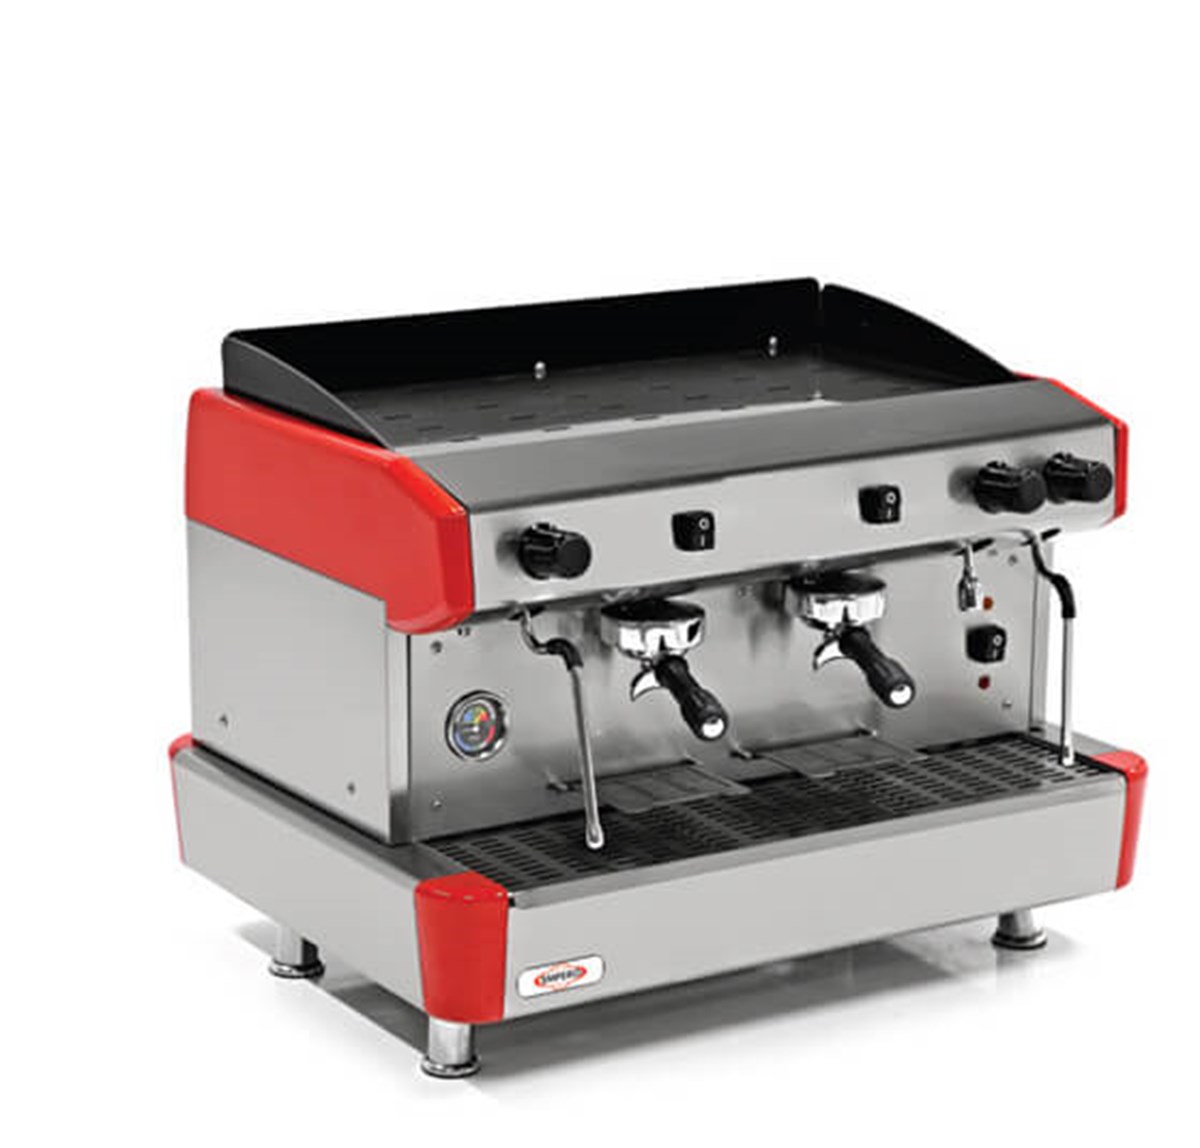 Empero Yarı Otomatik Cappucıno Ve Espresso Makinesi 2 Gruplu